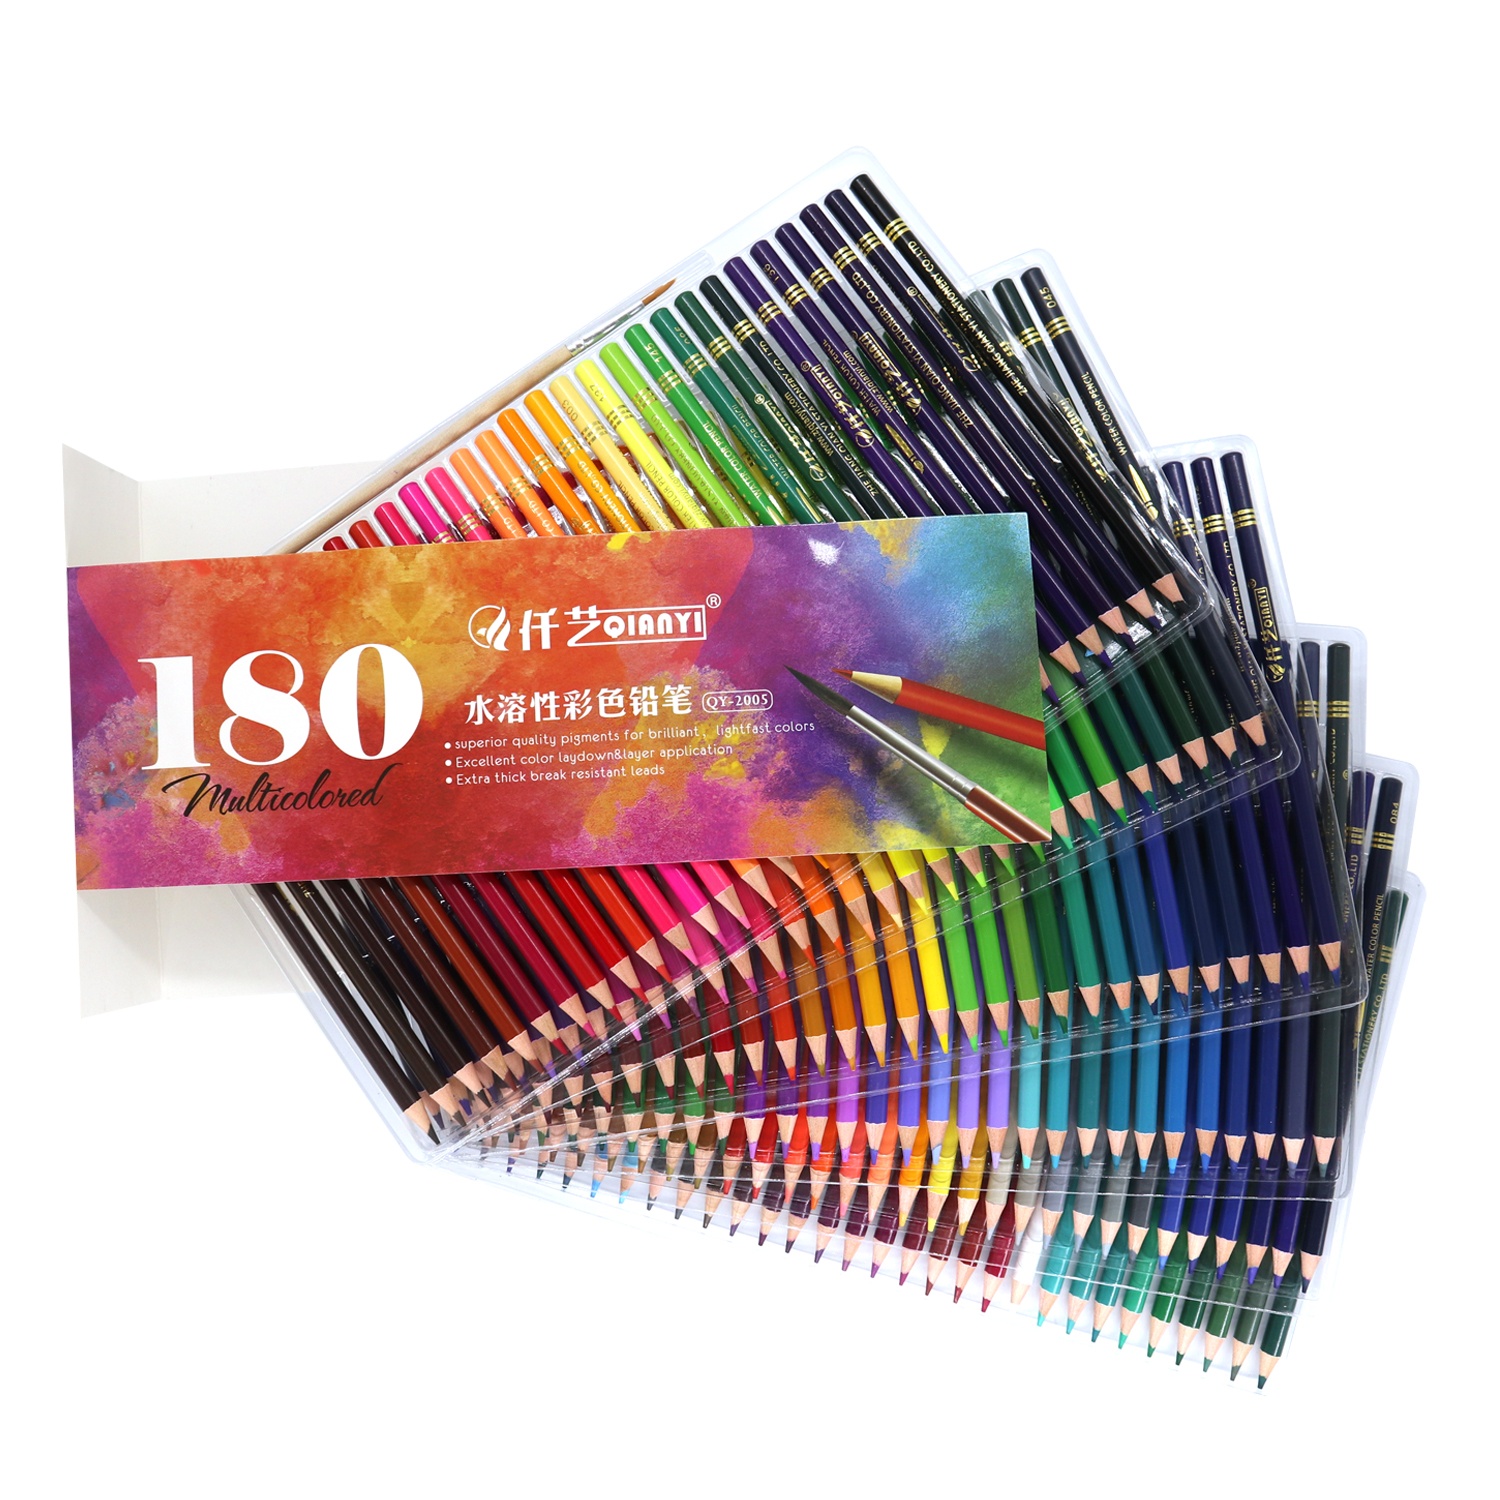 Toptan 180 Renk Su Çözünür Renk Kalemleri Renkli Kalem Seti Sanat Resim için Kalite 1